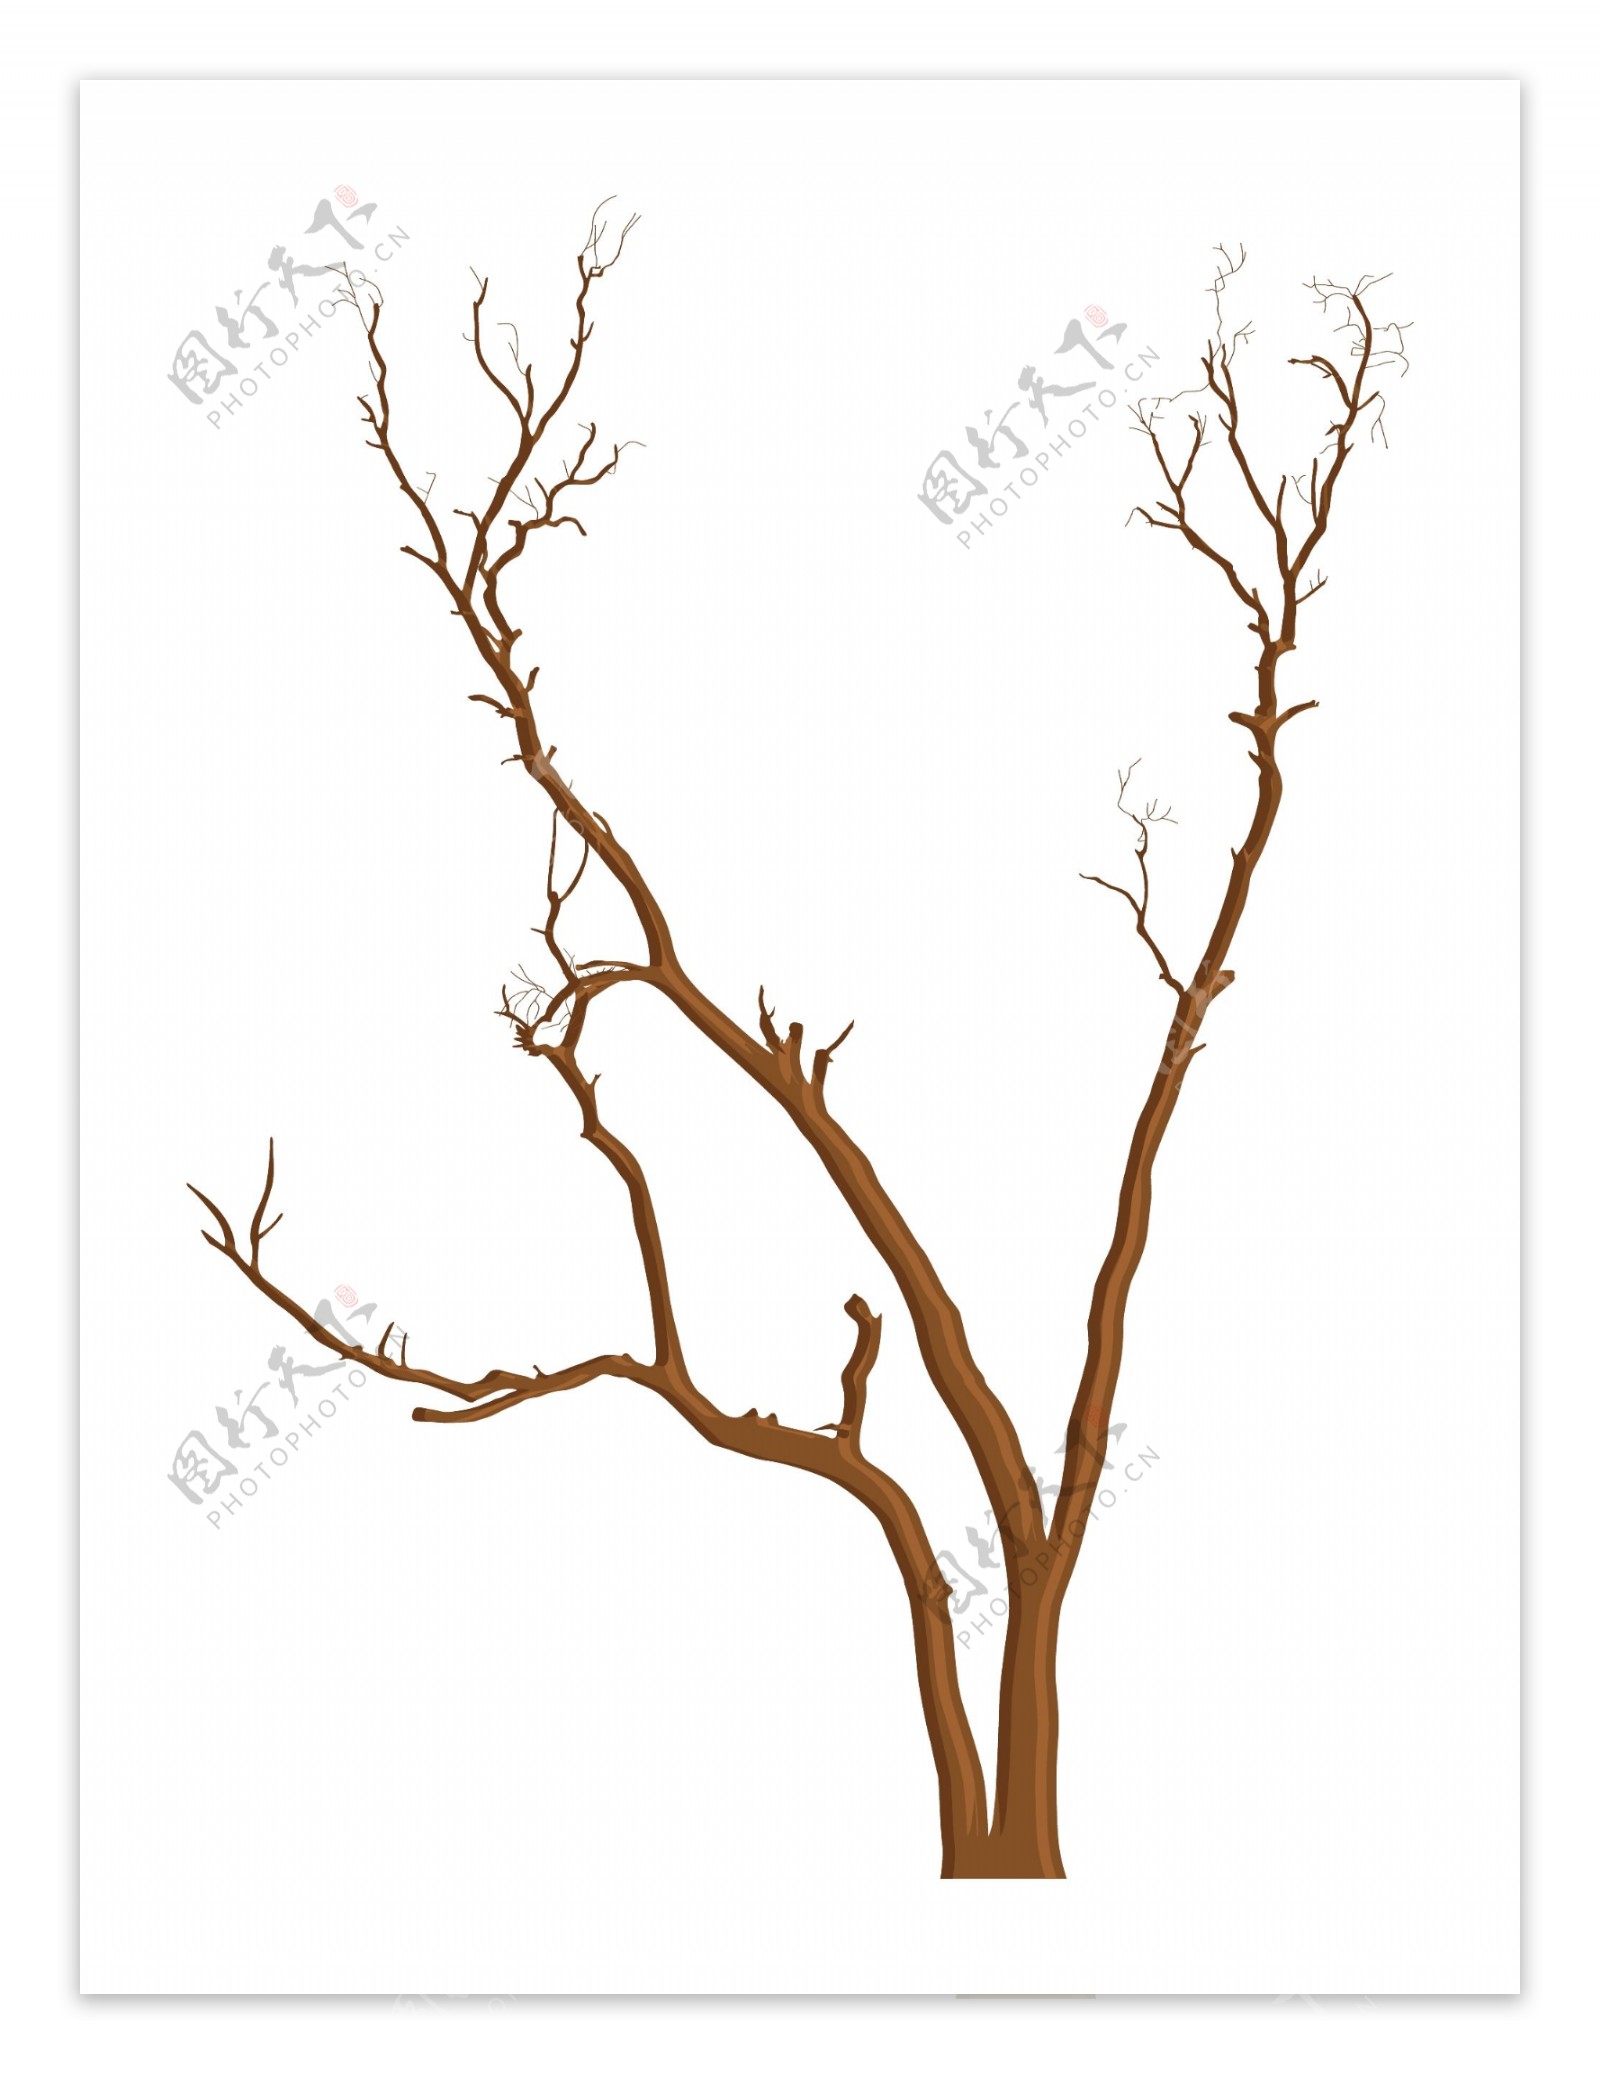 死树的分支要素设计